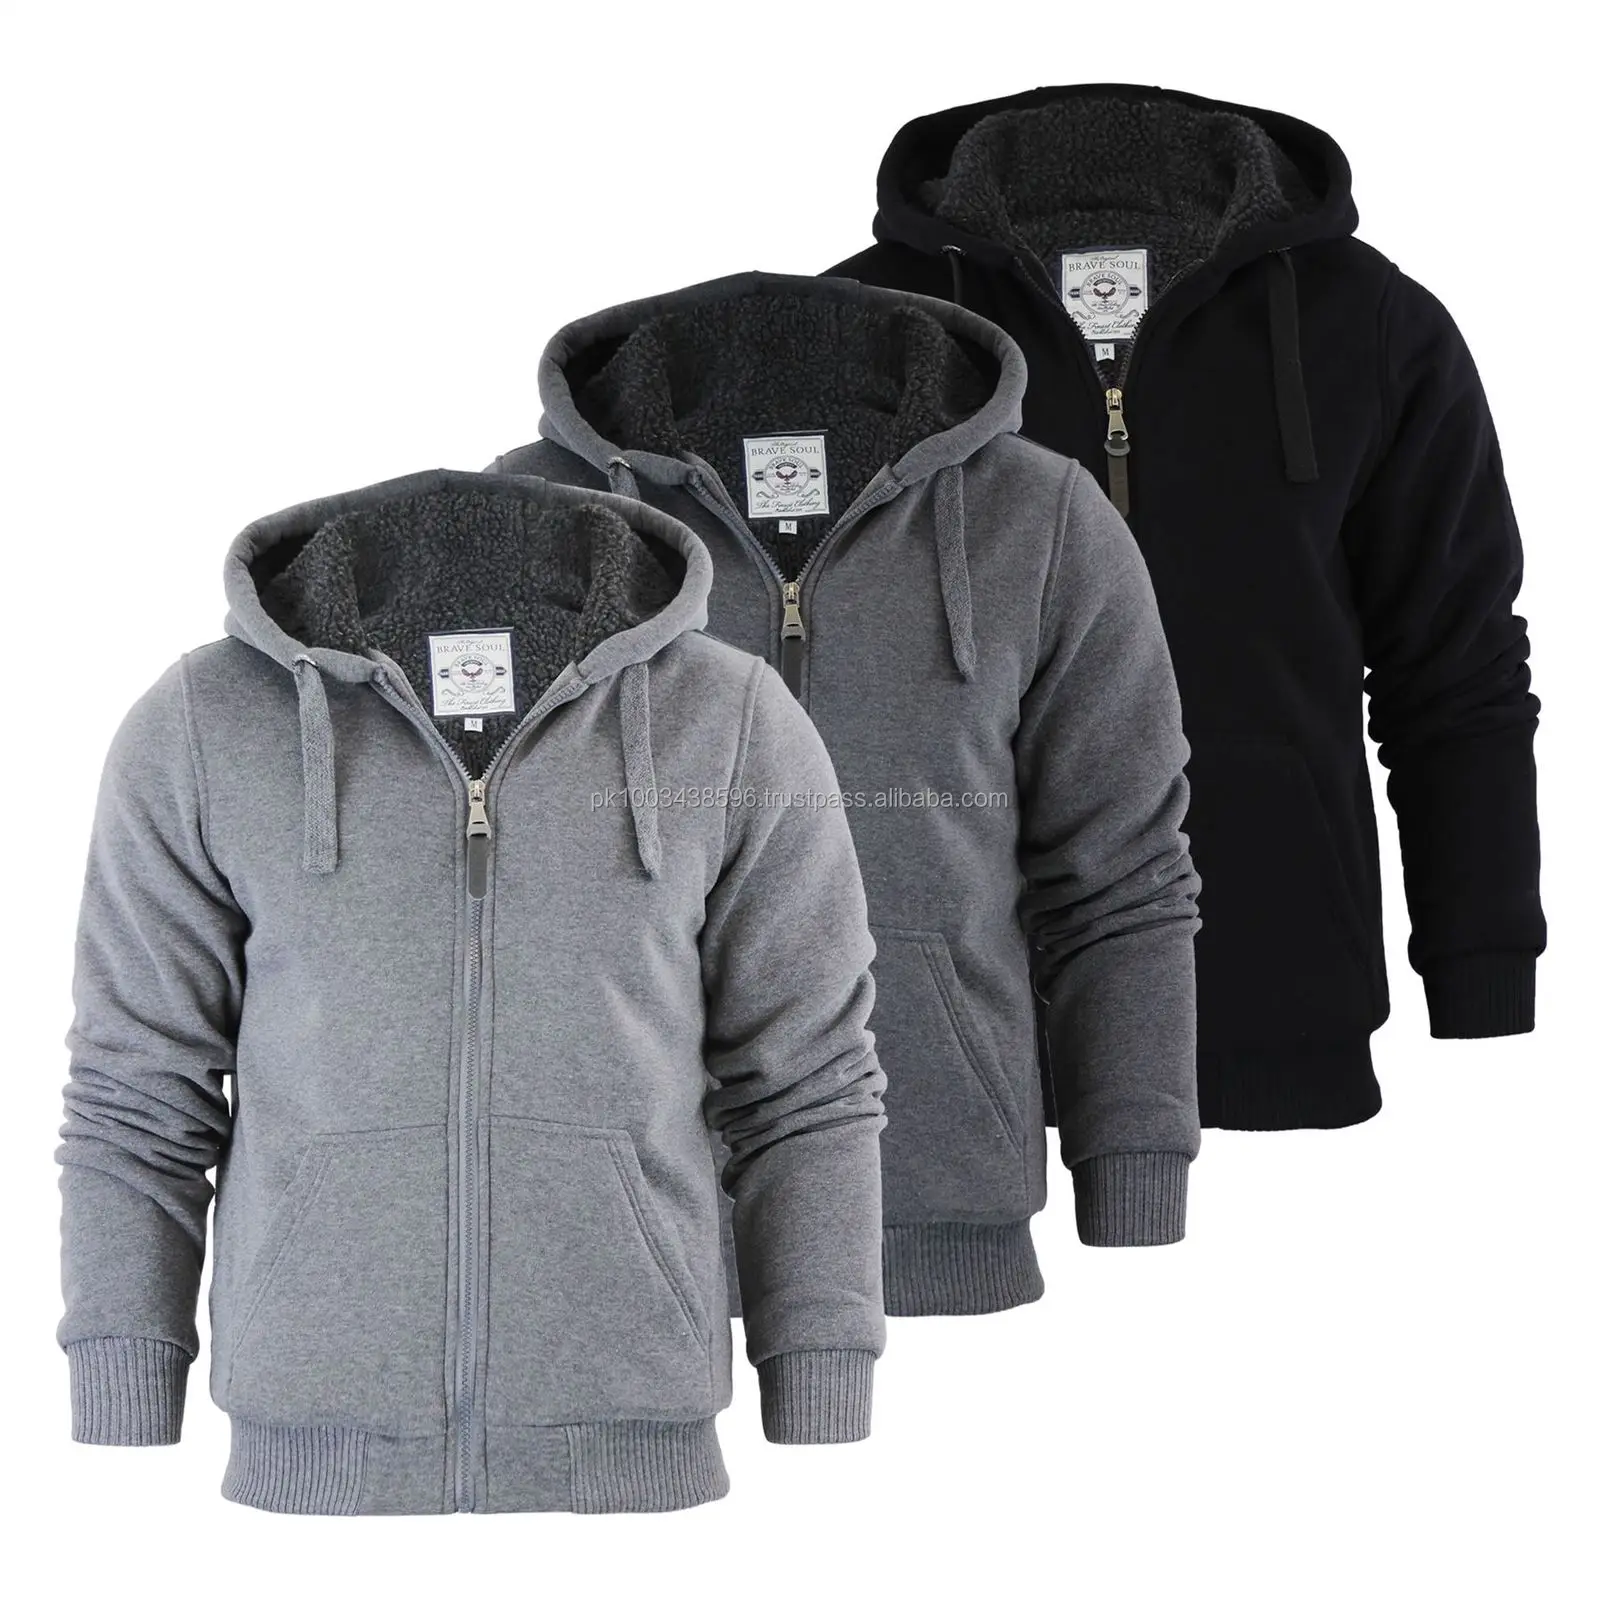 sherpa lined zip up hoodie